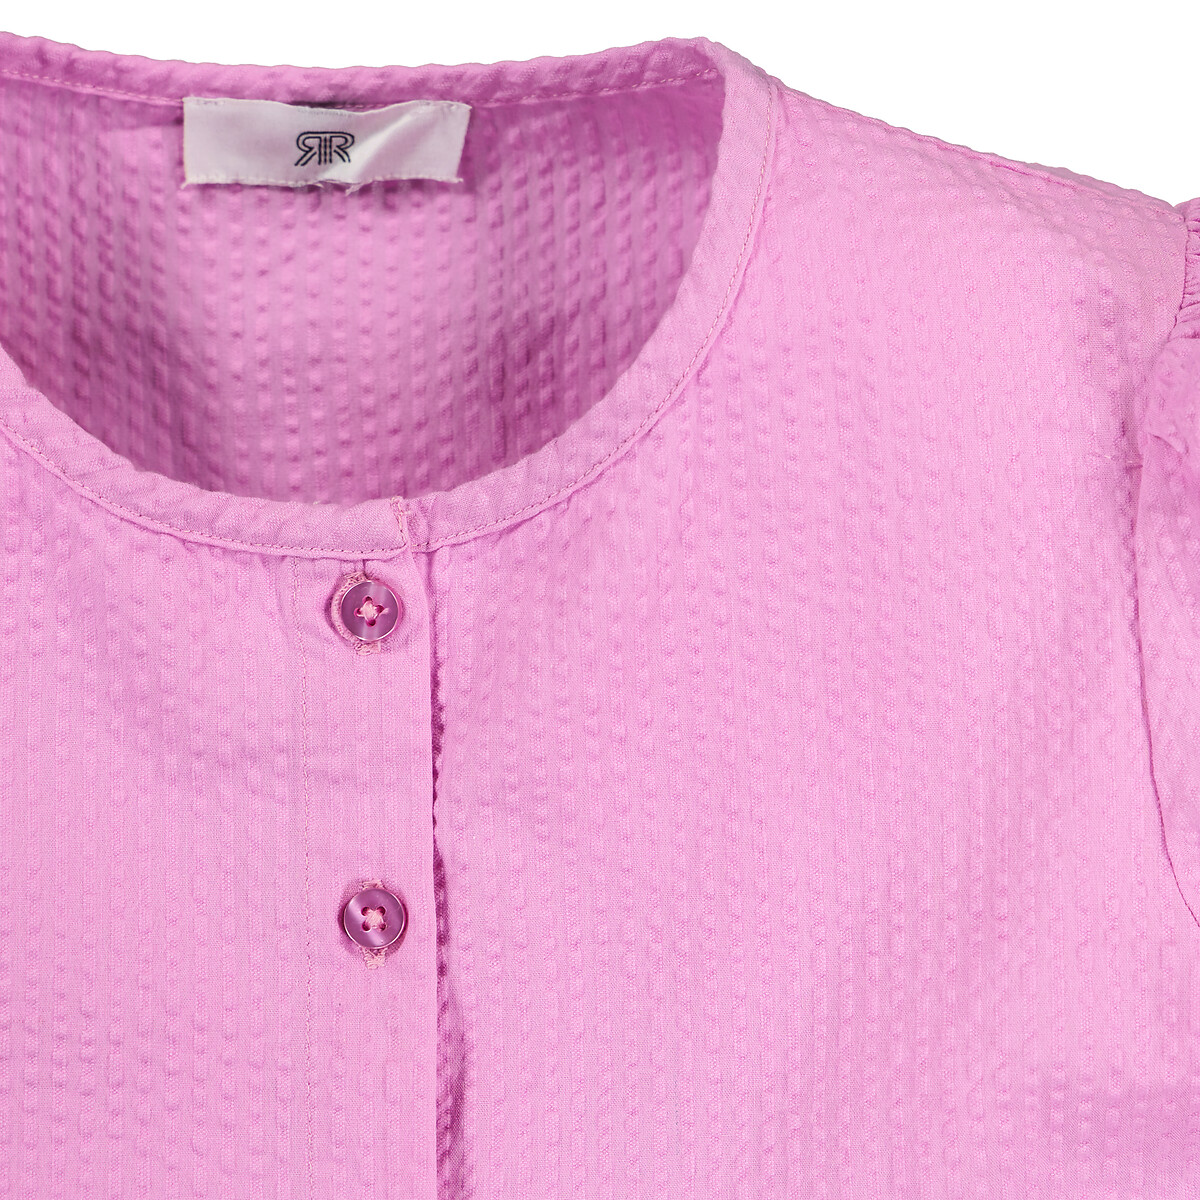 Платье С короткими рукавами из рифленой ткани 3 года - 94 см розовый LaRedoute, размер 3 года - 94 см - фото 4